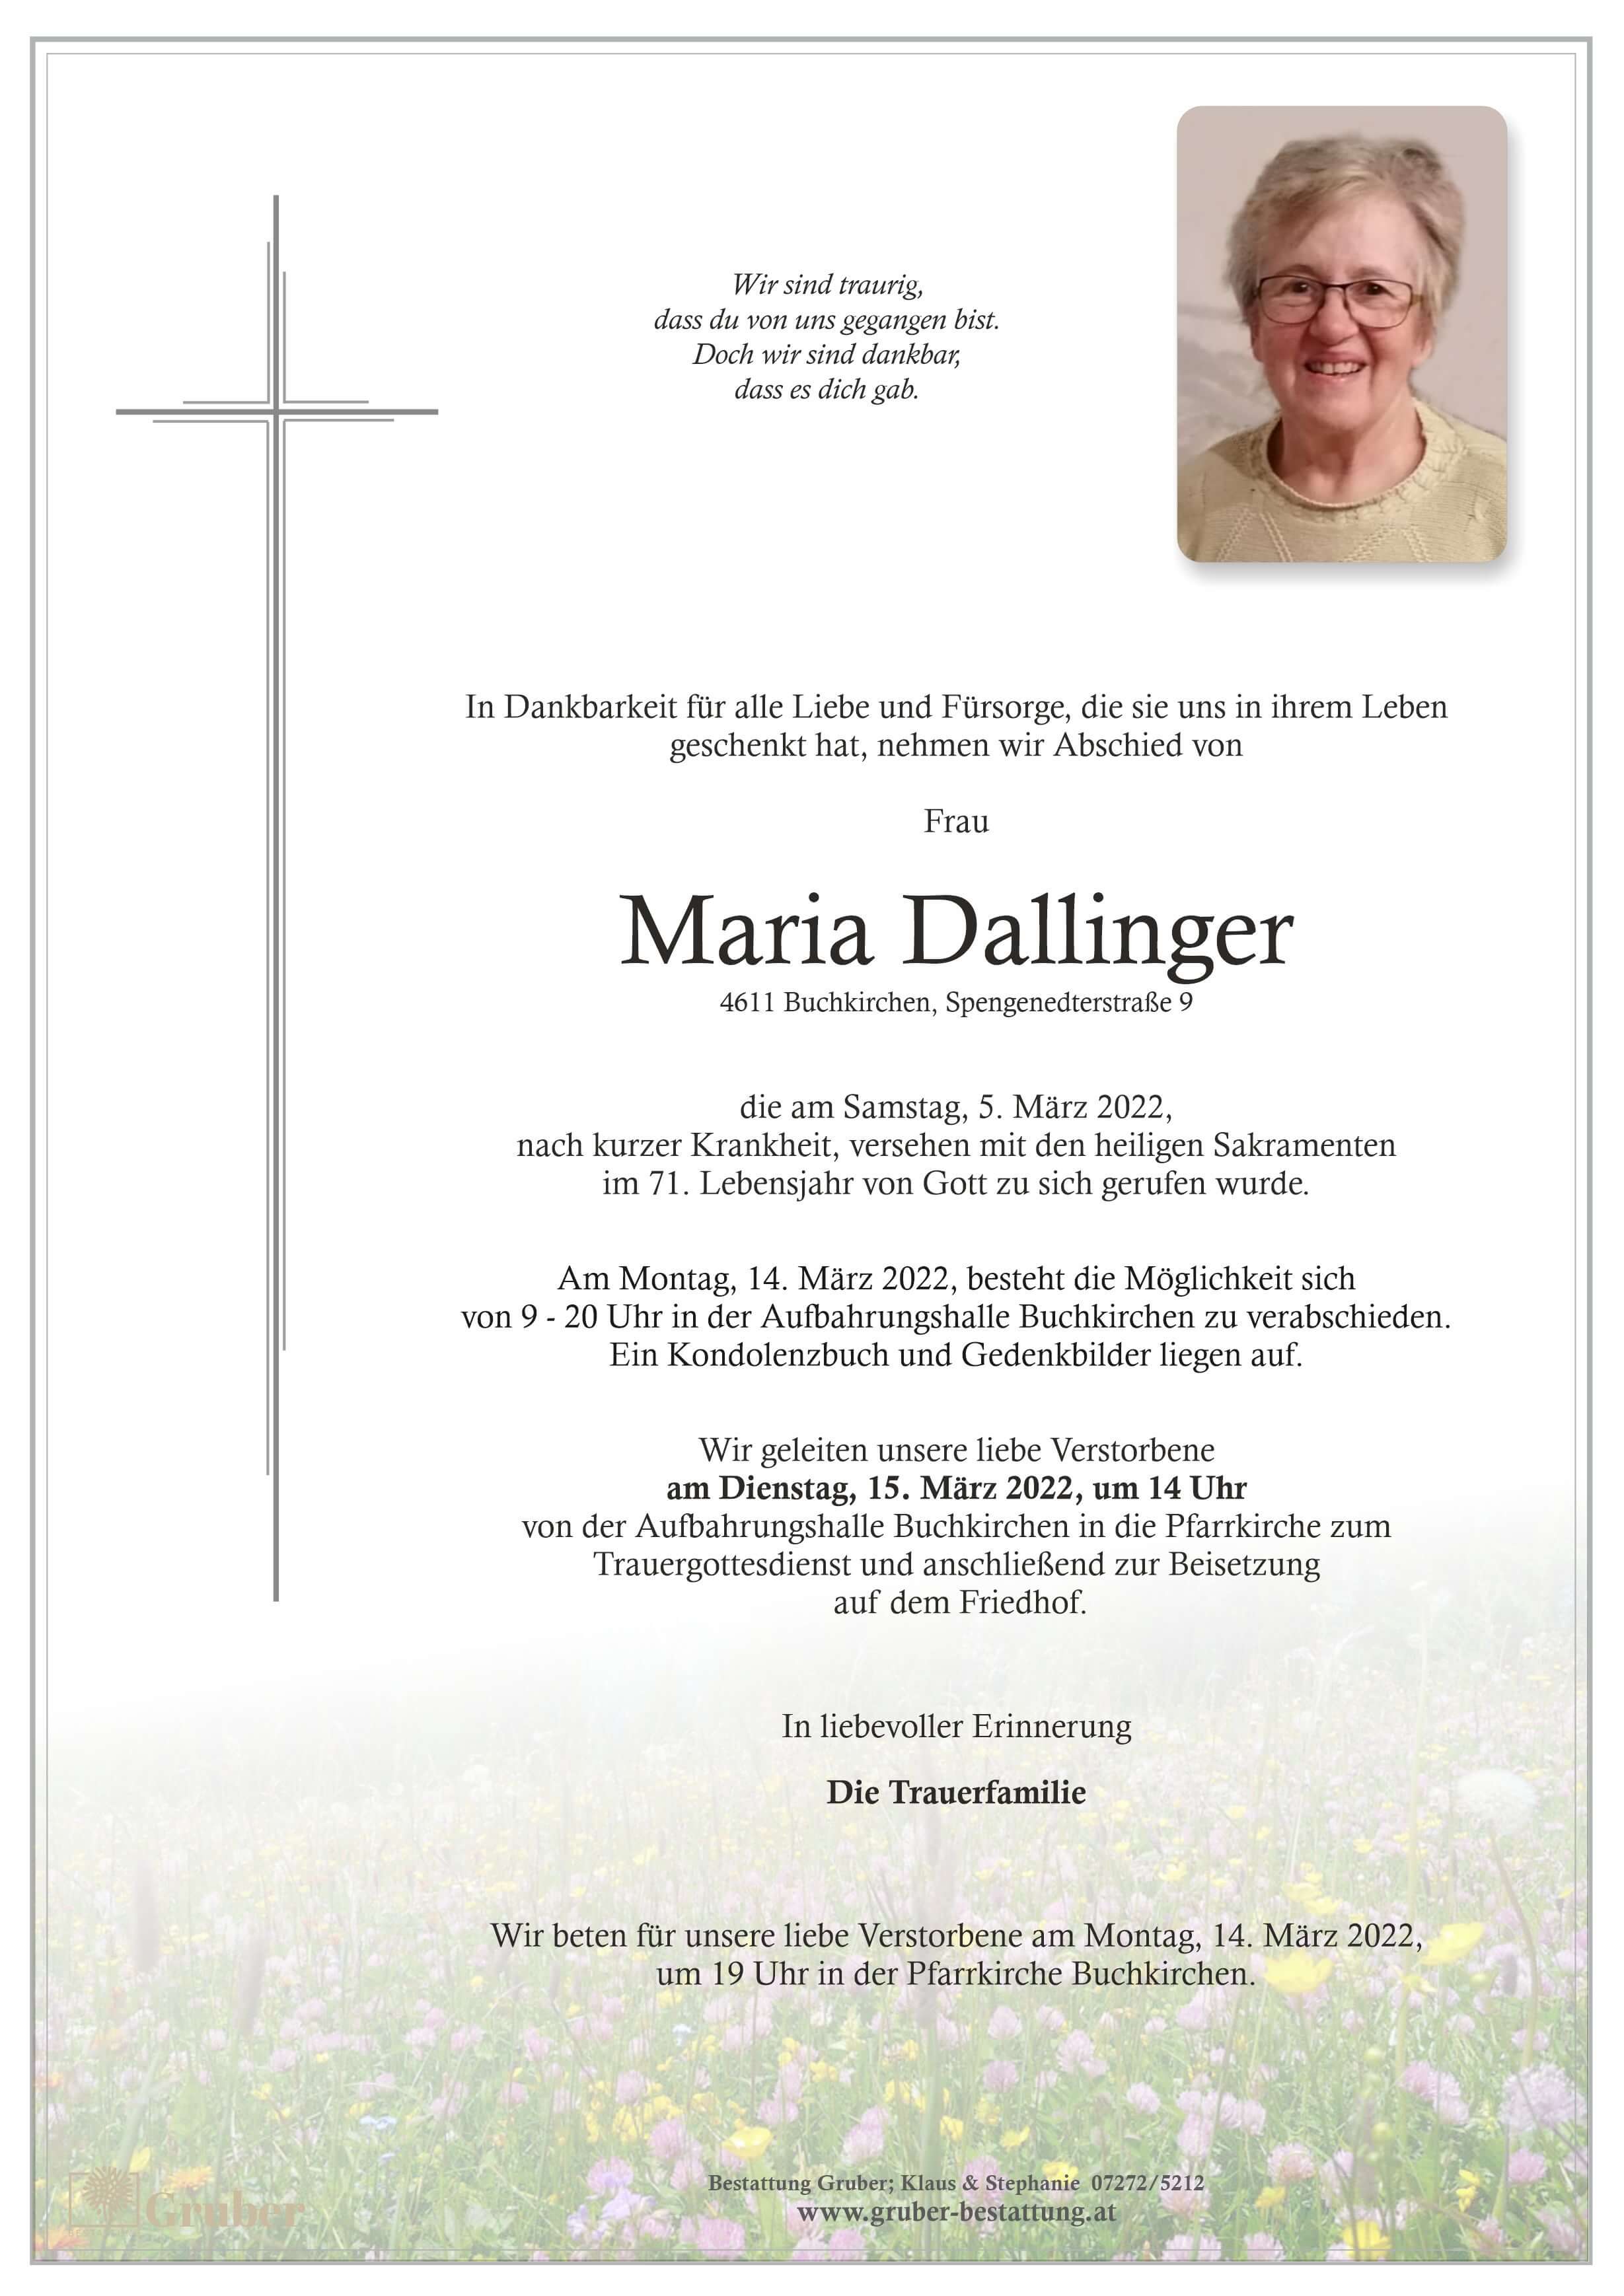 Maria Dallinger (Buchkirchen)